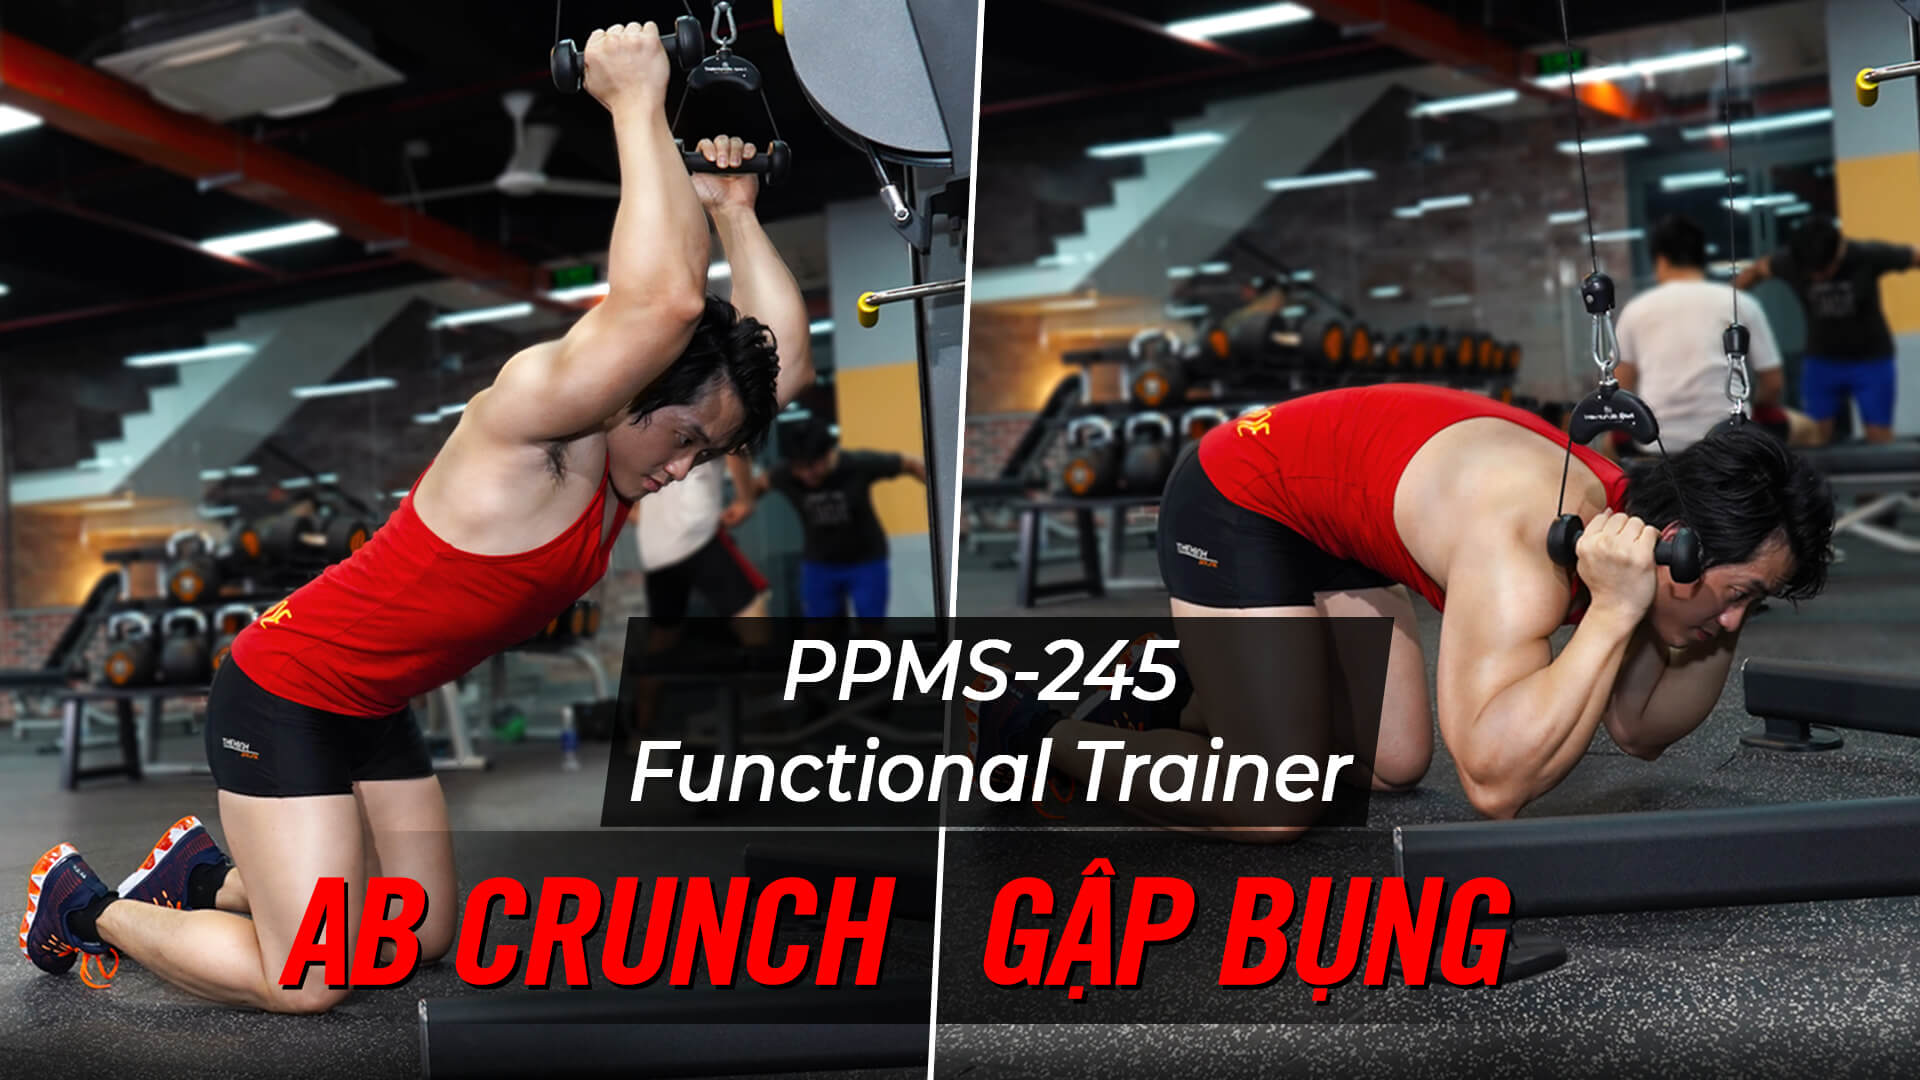 AB Crunch - Cách gập bụng trên máy Functional Trainer (PPMS-245)